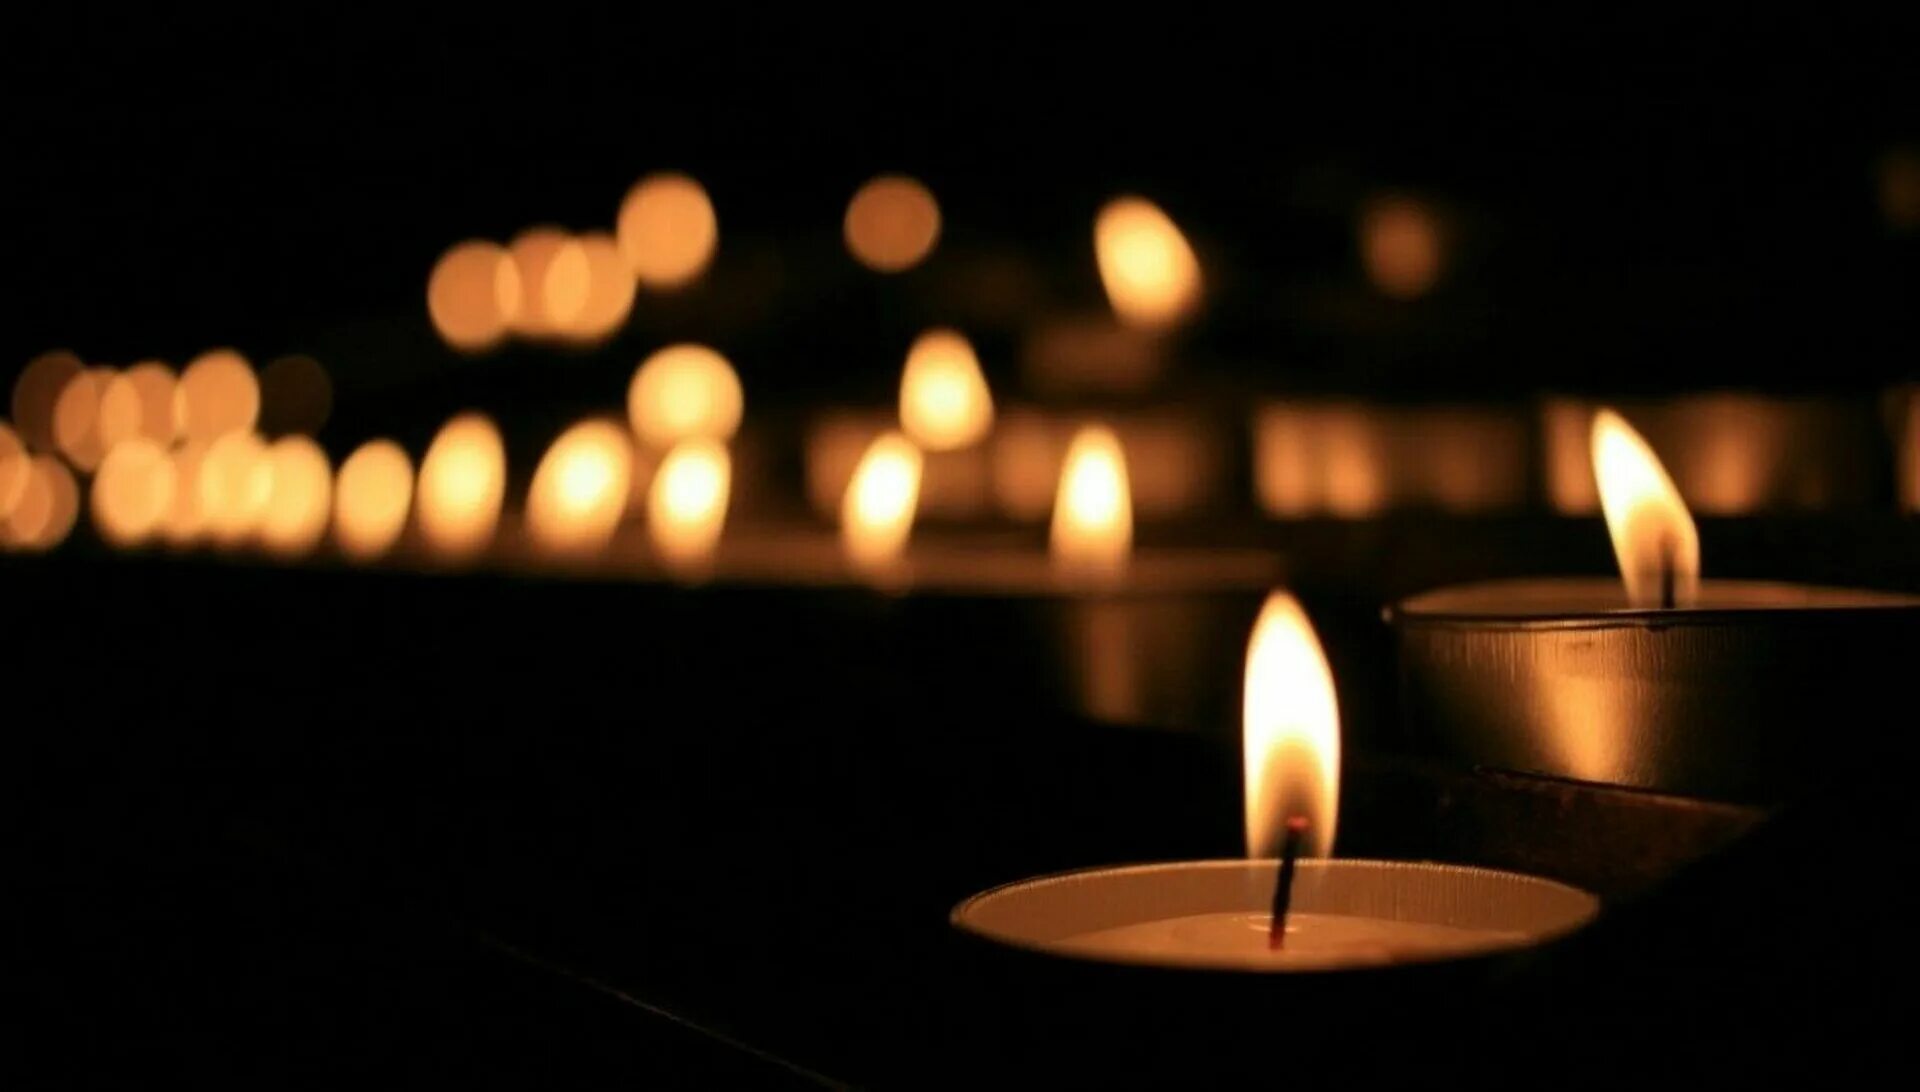 Сегодня день общенационального траура. Свеча соболезнования. Свечка соболезнования. Траурная свеча. День траура.